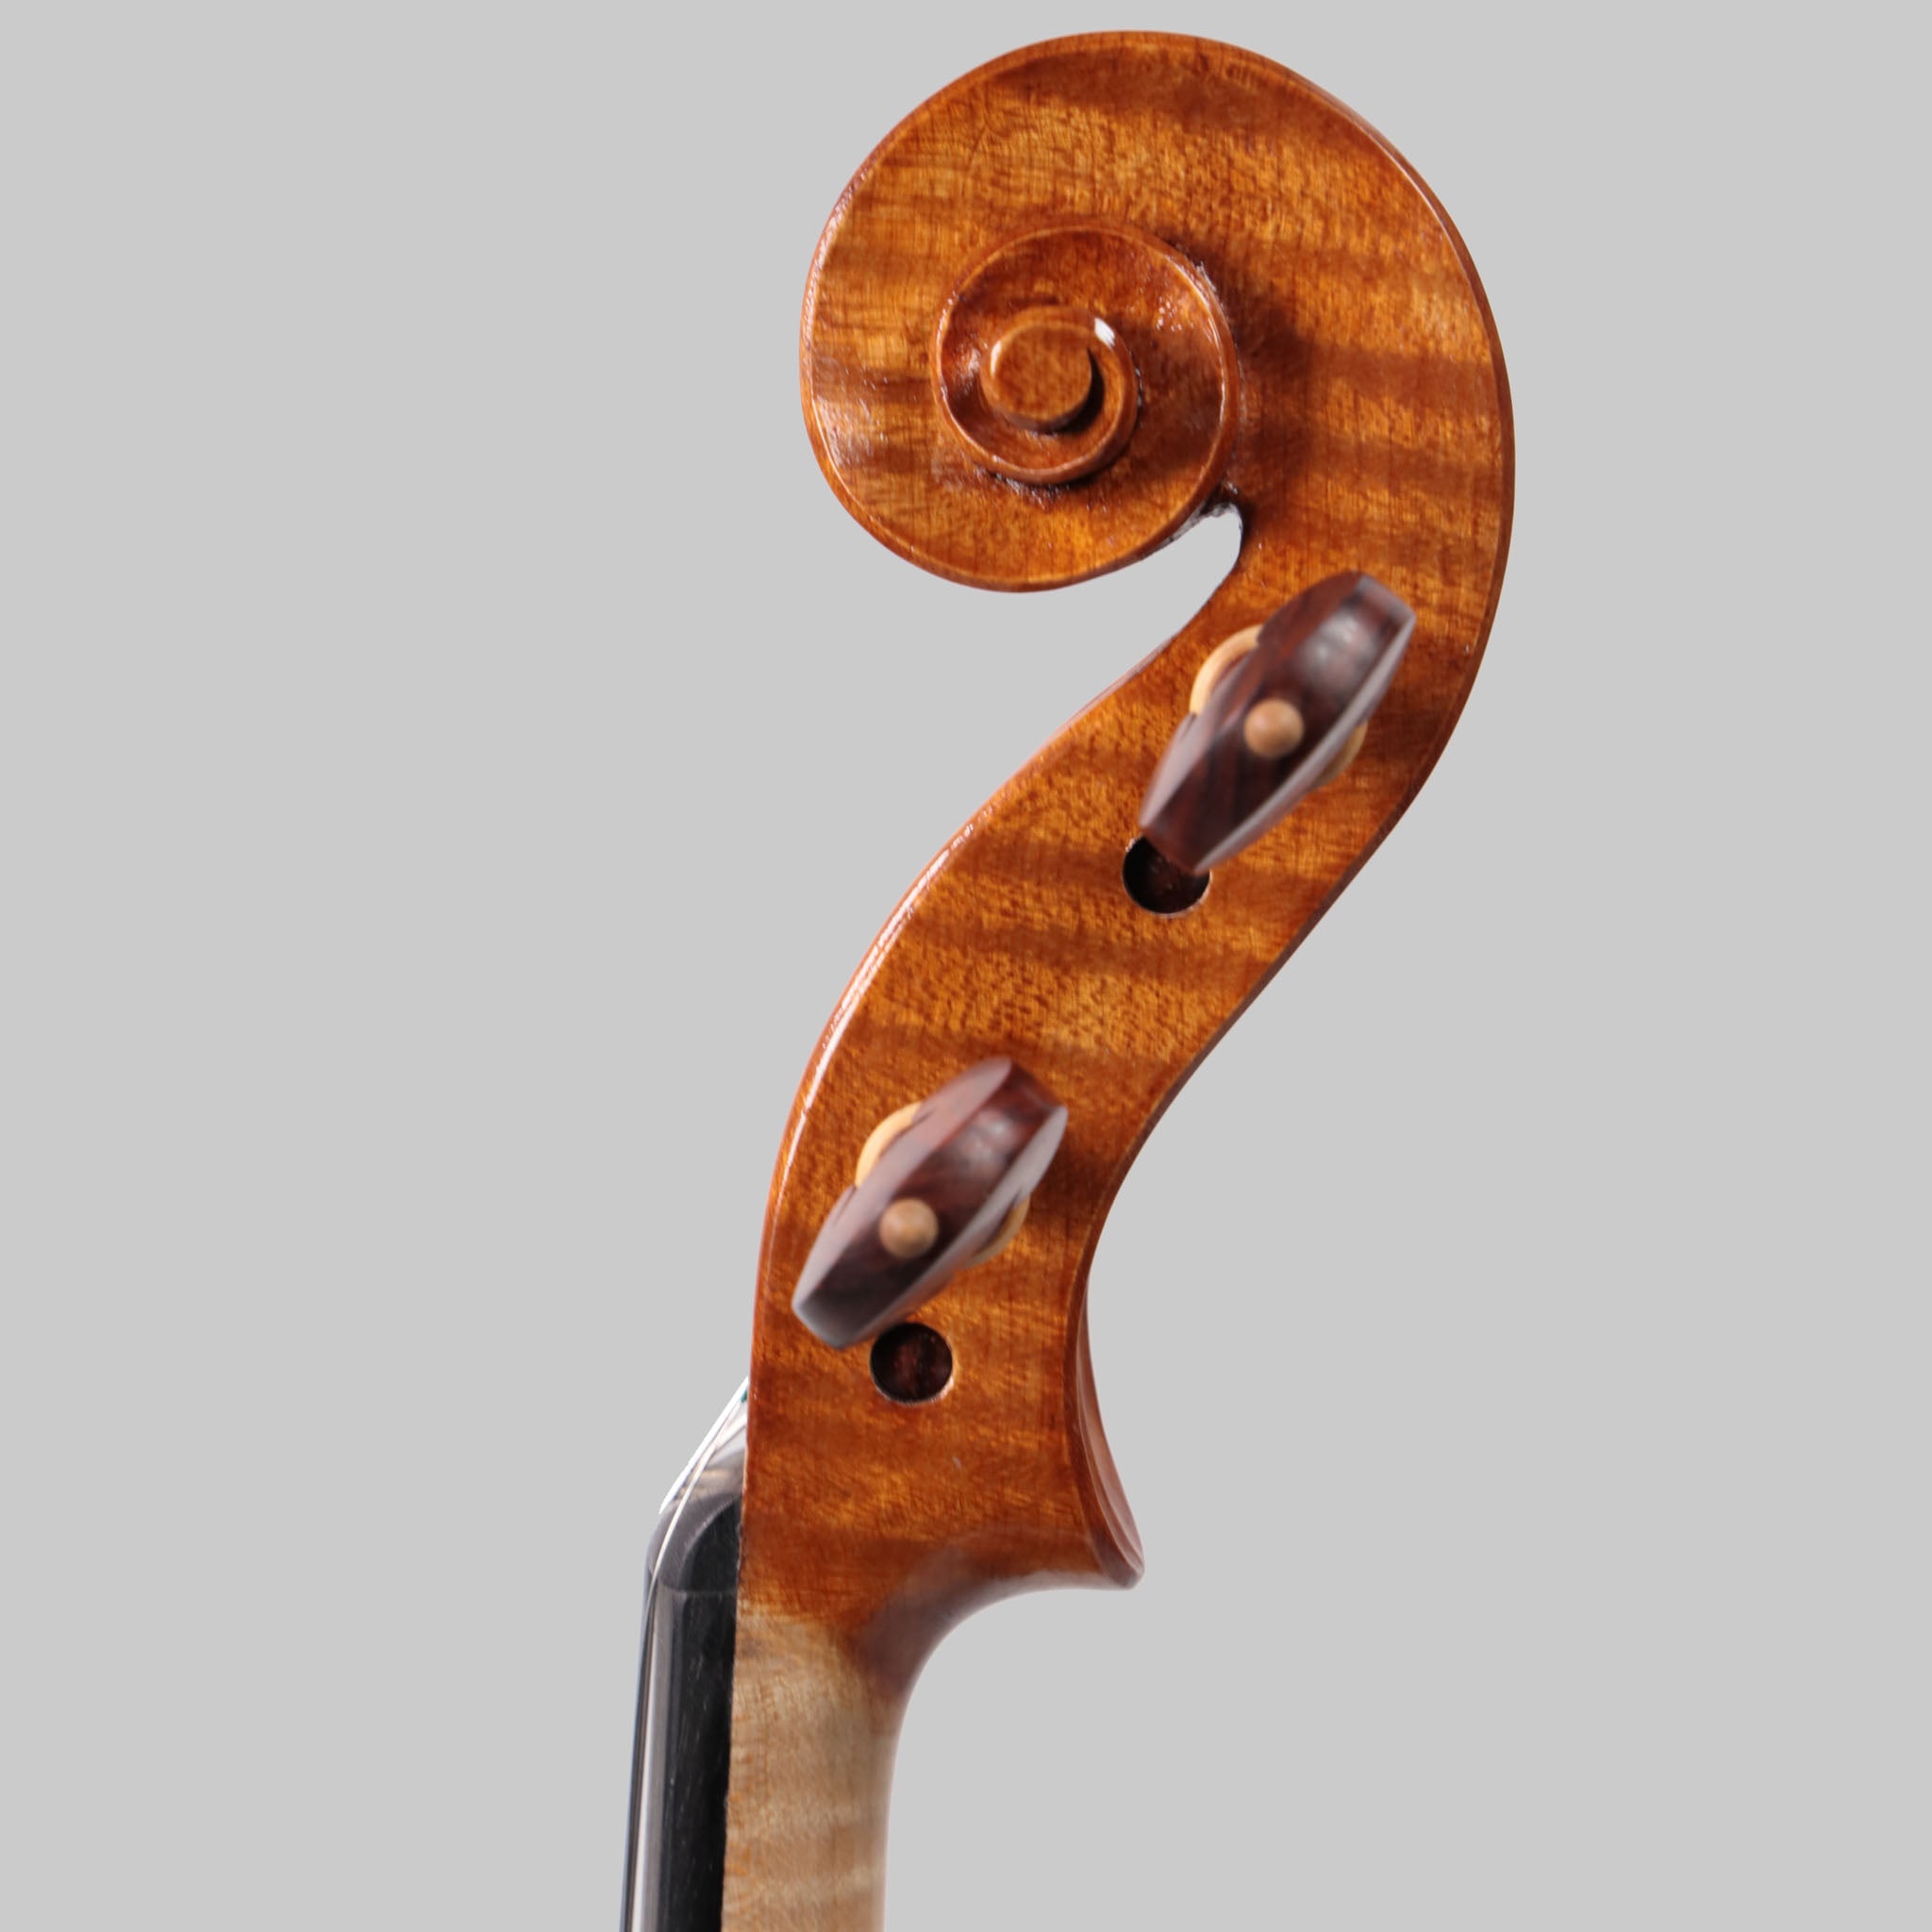 Luca Zerilli 2021 Violin, Udine Italy No. 29